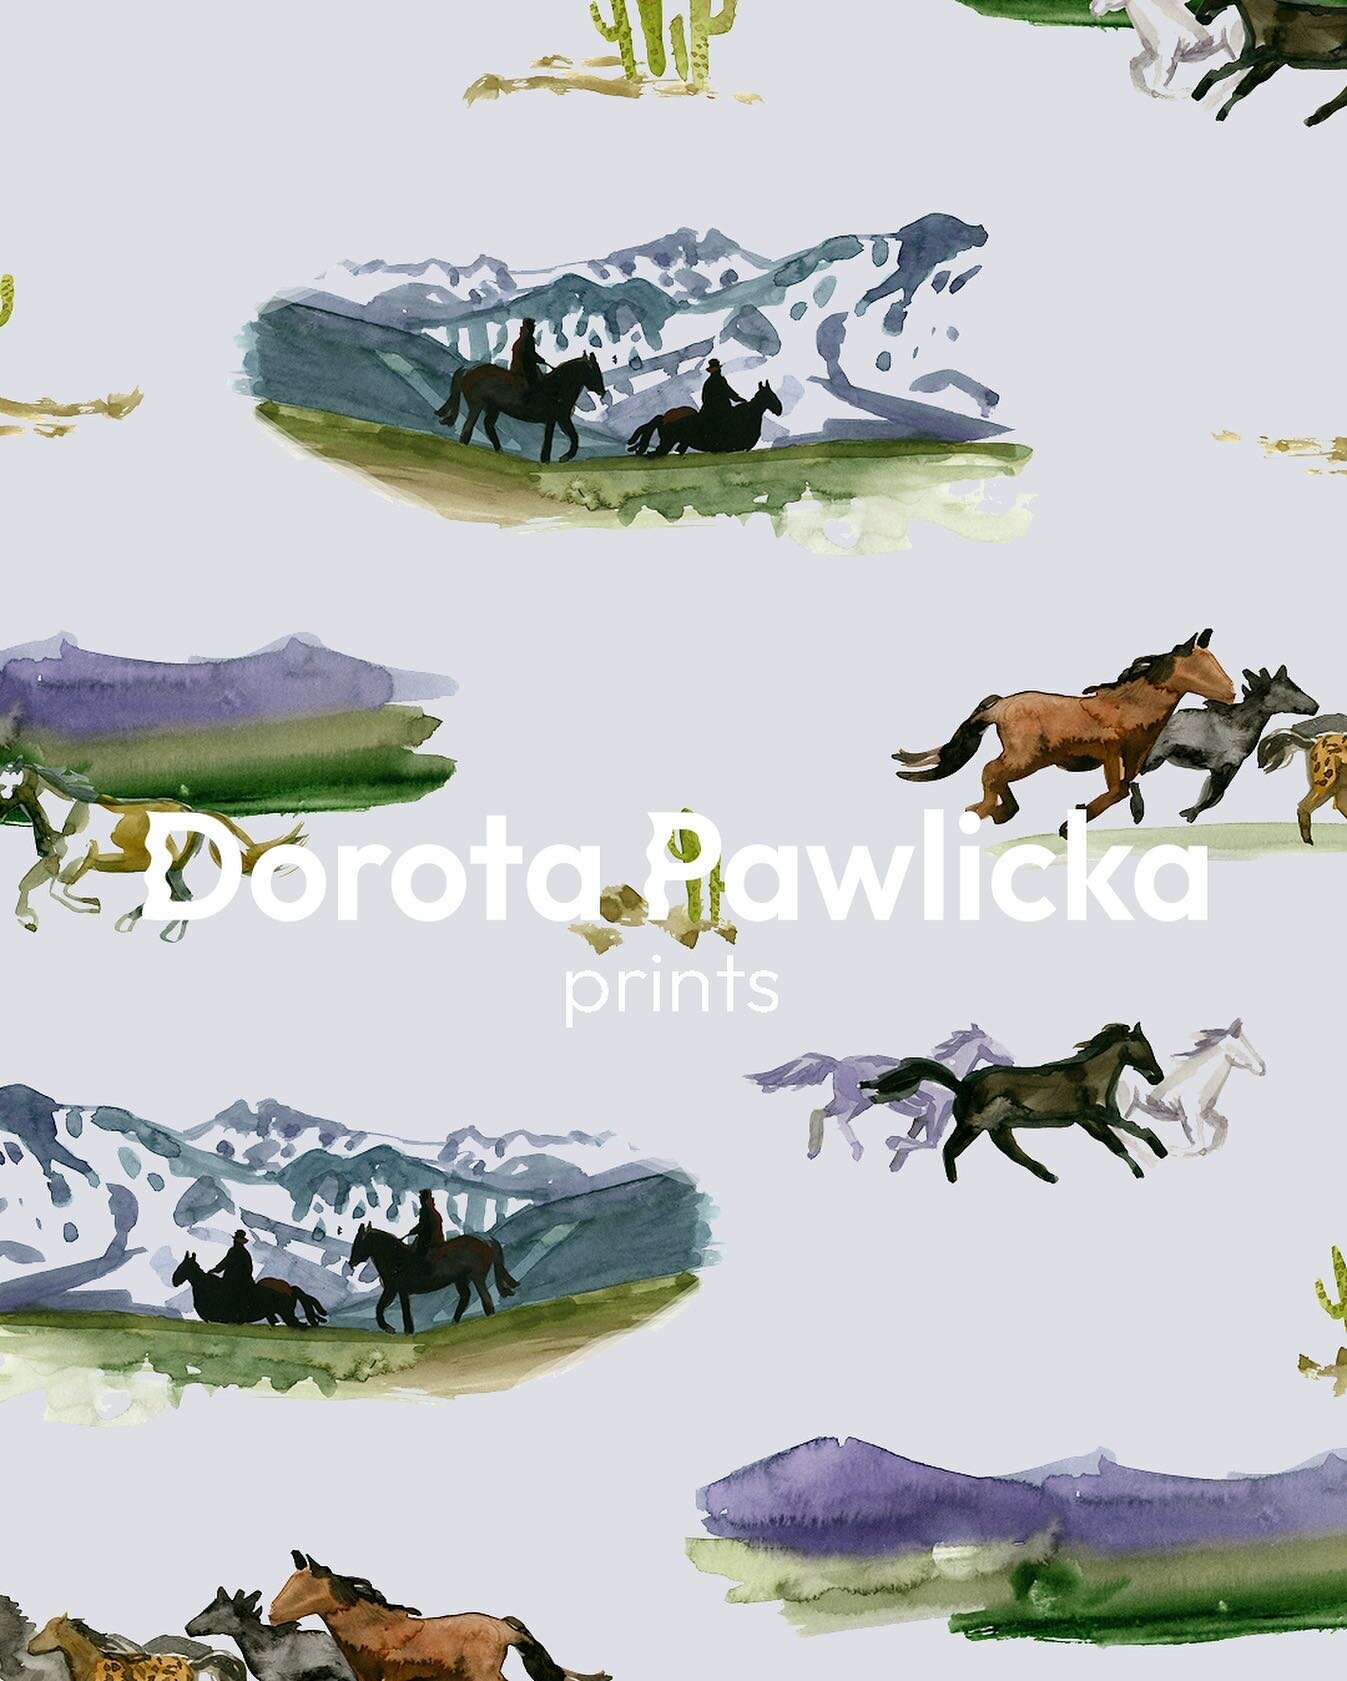 🐎🐎🐎

#textileprintdesign #surfaceprintdesign #horseprints #horseprint #surfaceprintdesigner